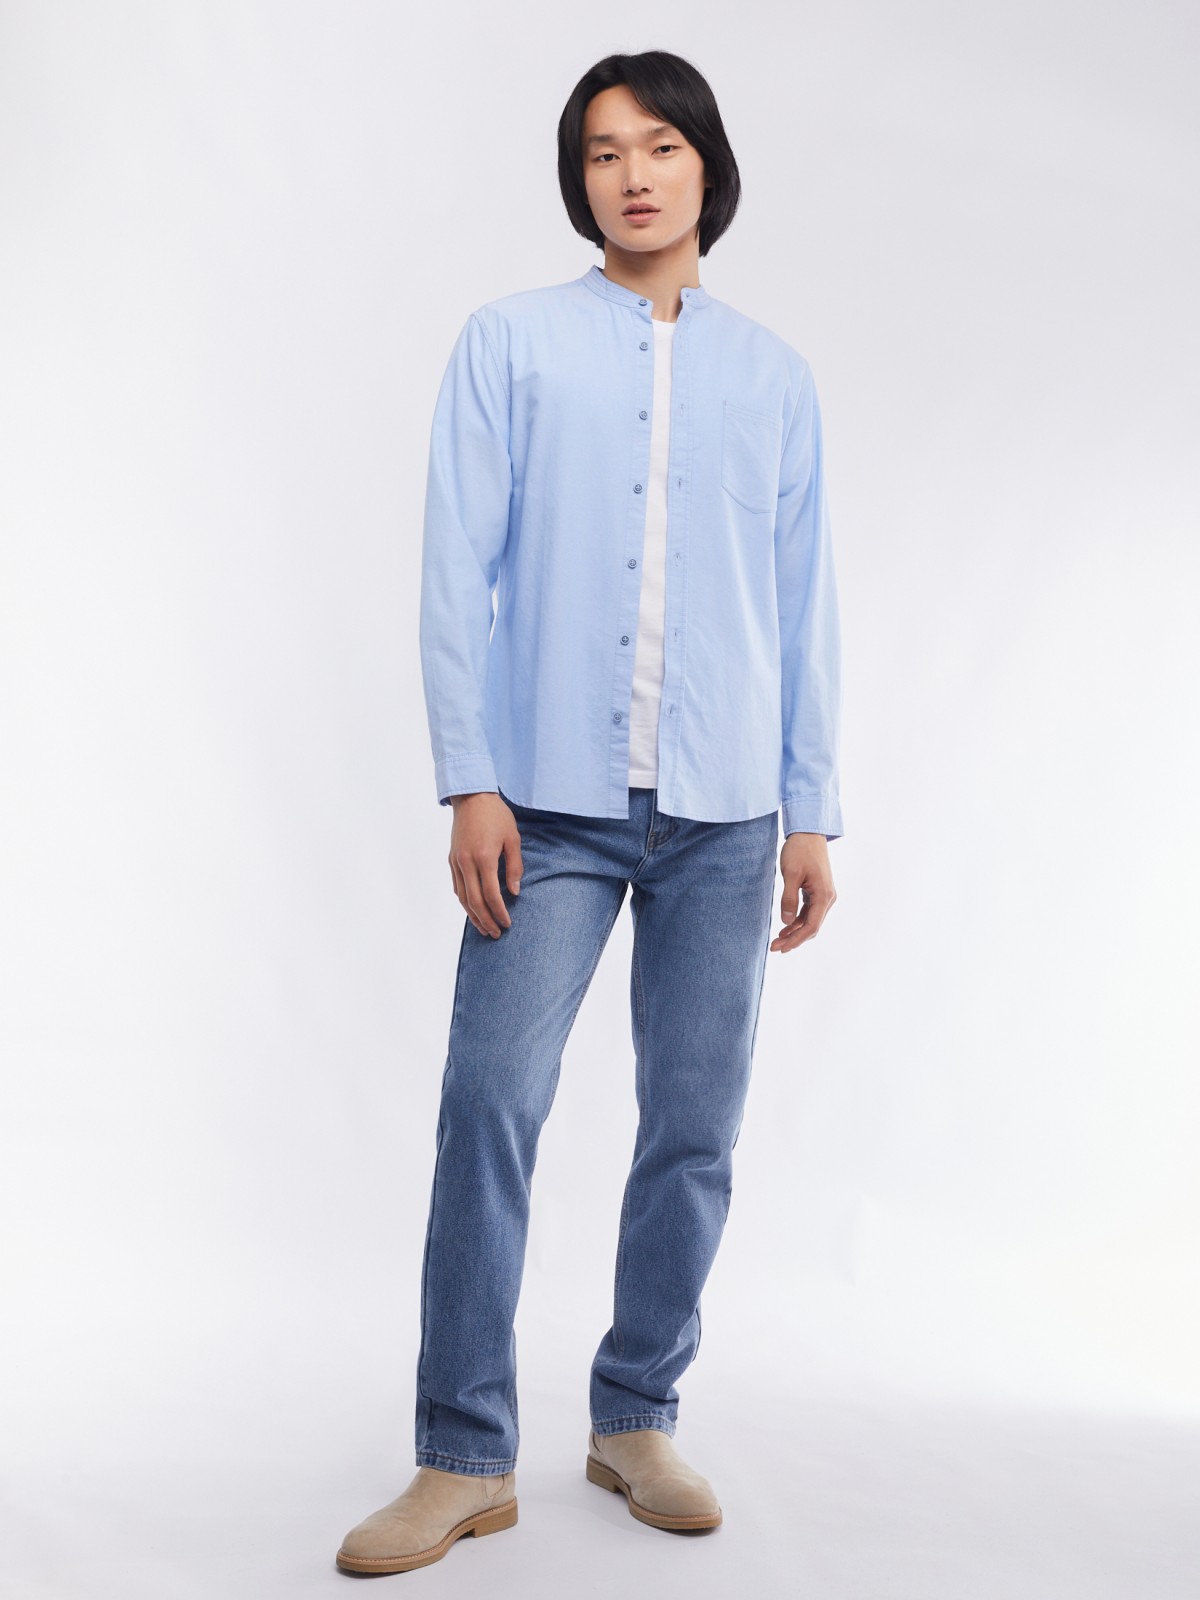 Офисная рубашка из хлопка с воротником-стойкой и длинным рукавом zolla 014122159033, цвет светло-голубой, размер S - фото 2